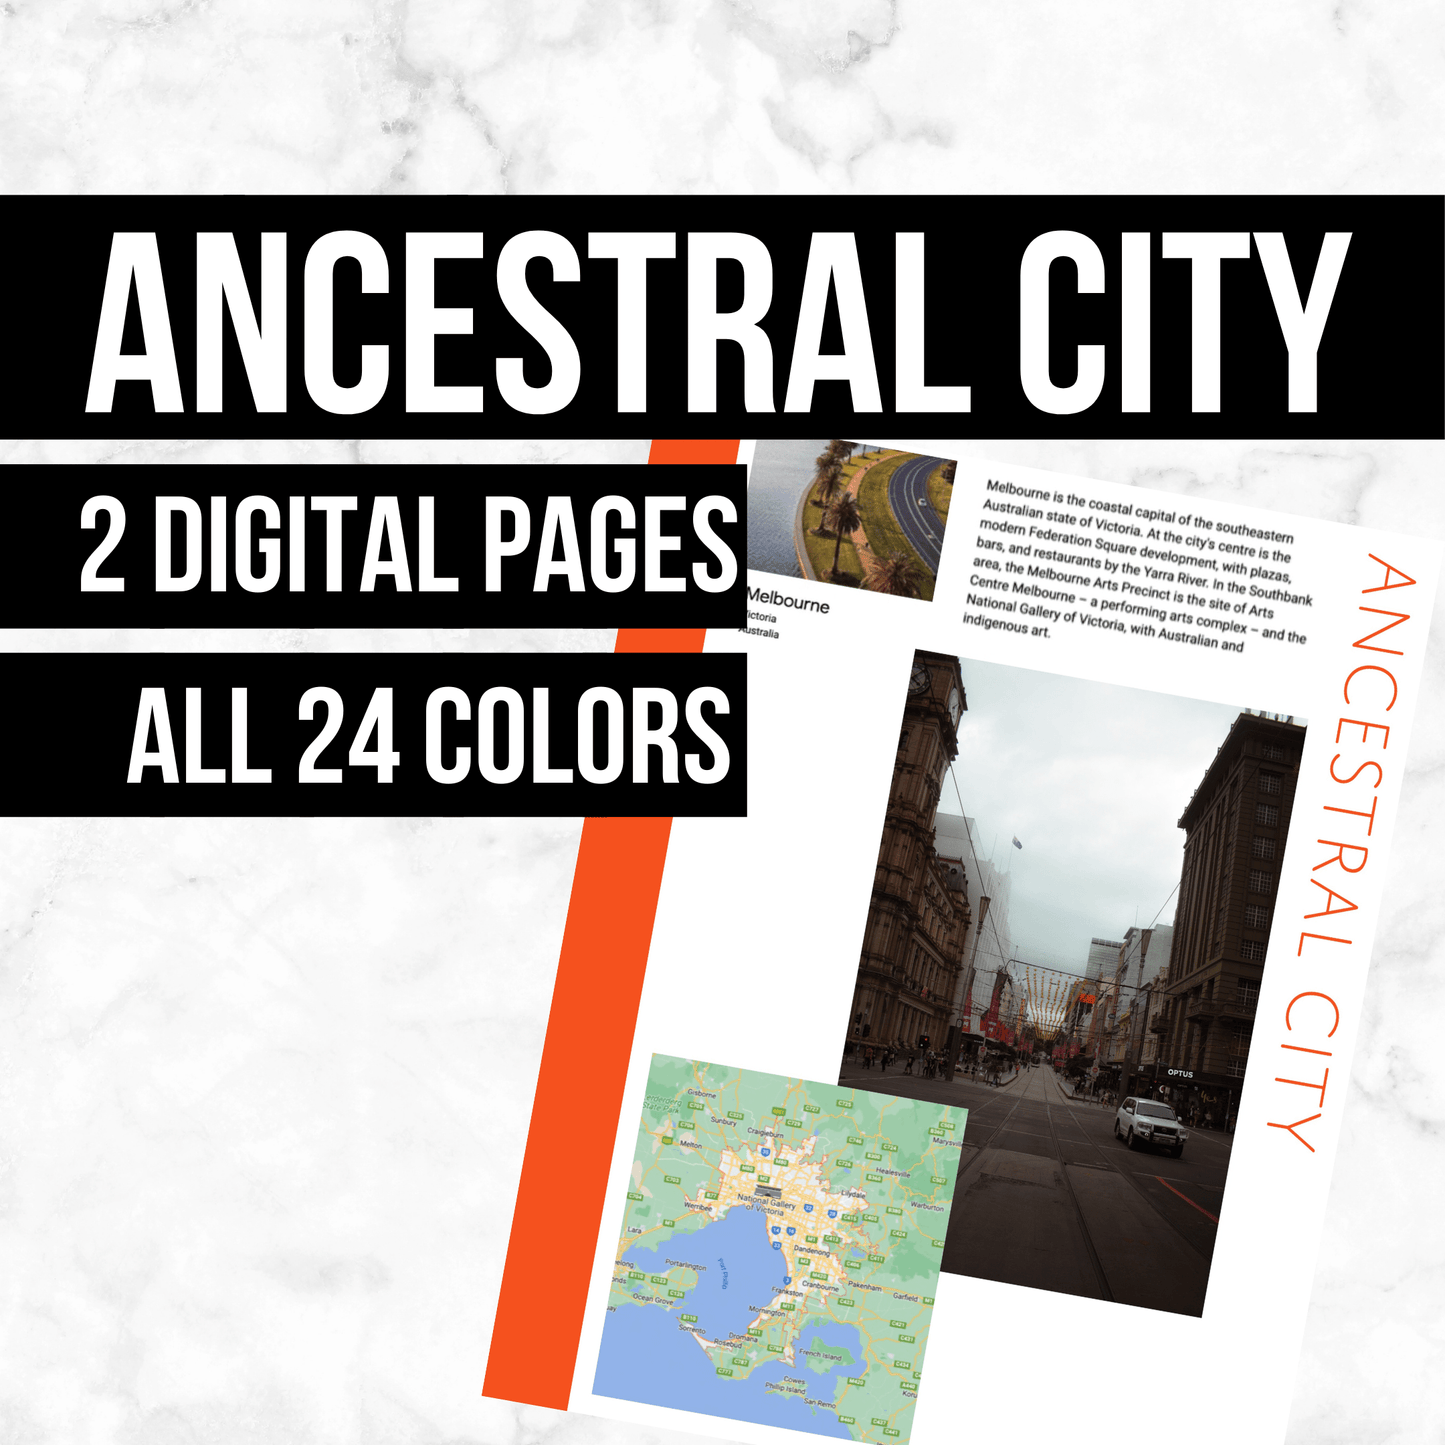 Ancestral City Page: Printable Genealogy Form (Digital Download)